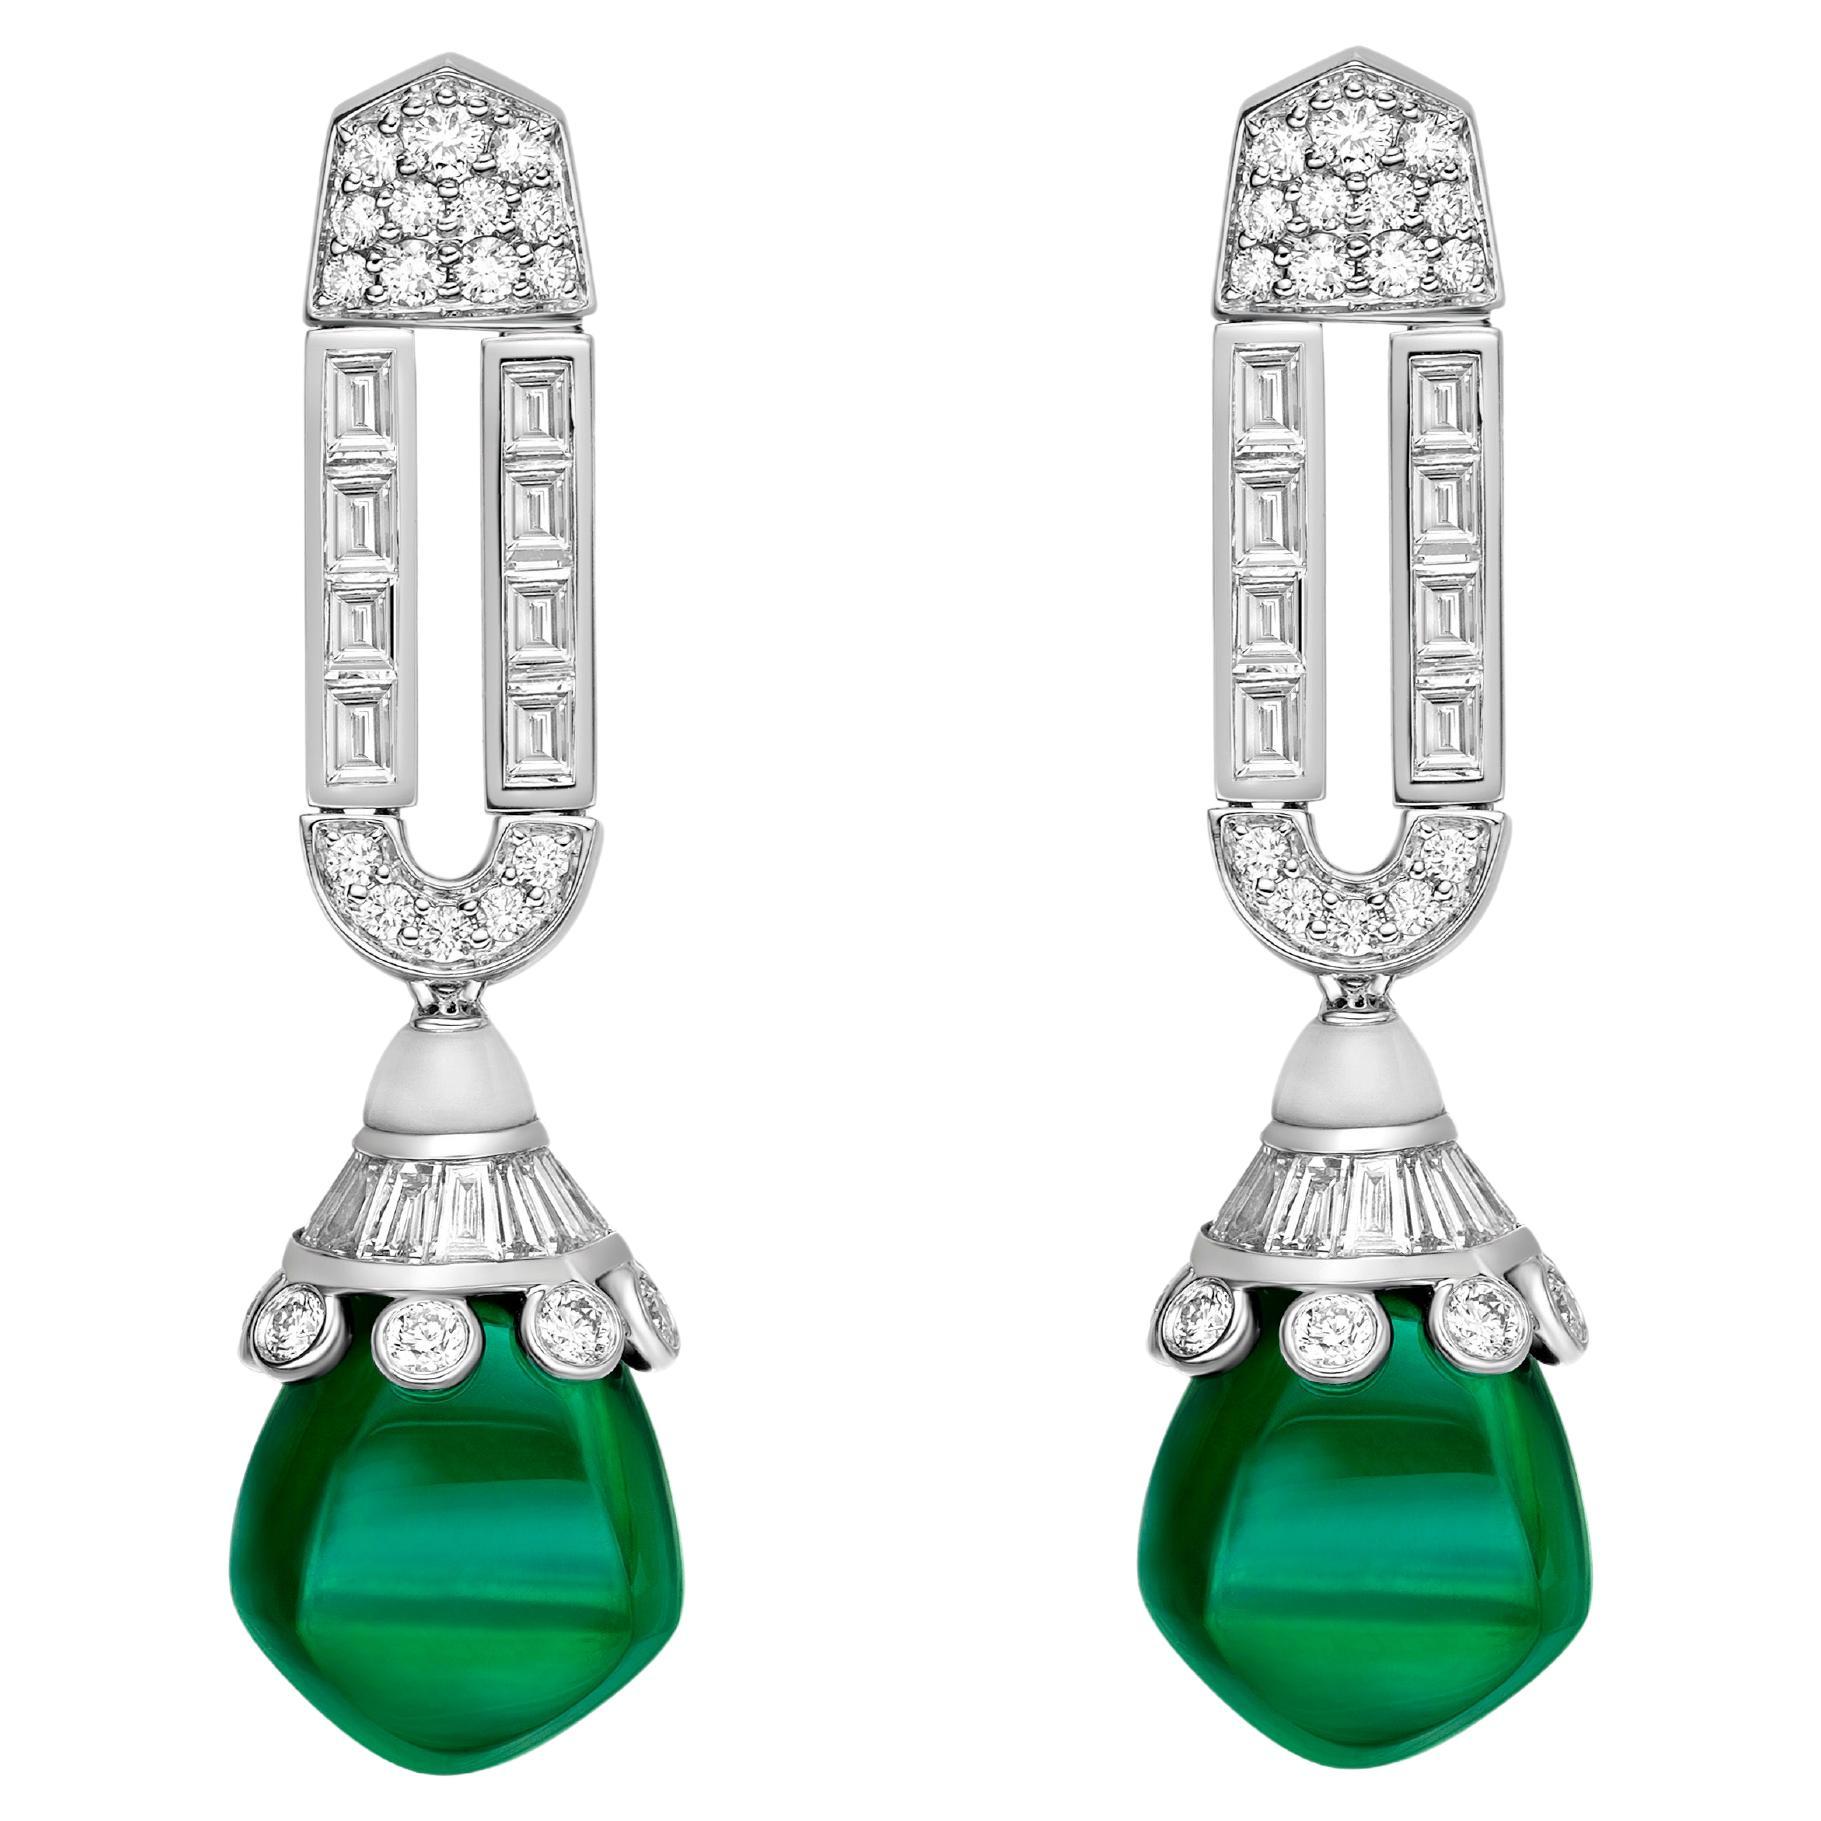 27.83 Karat grüner Turmalin-Tropfen-Ohrringe aus 18 Karat Weißgold mit Diamanten.